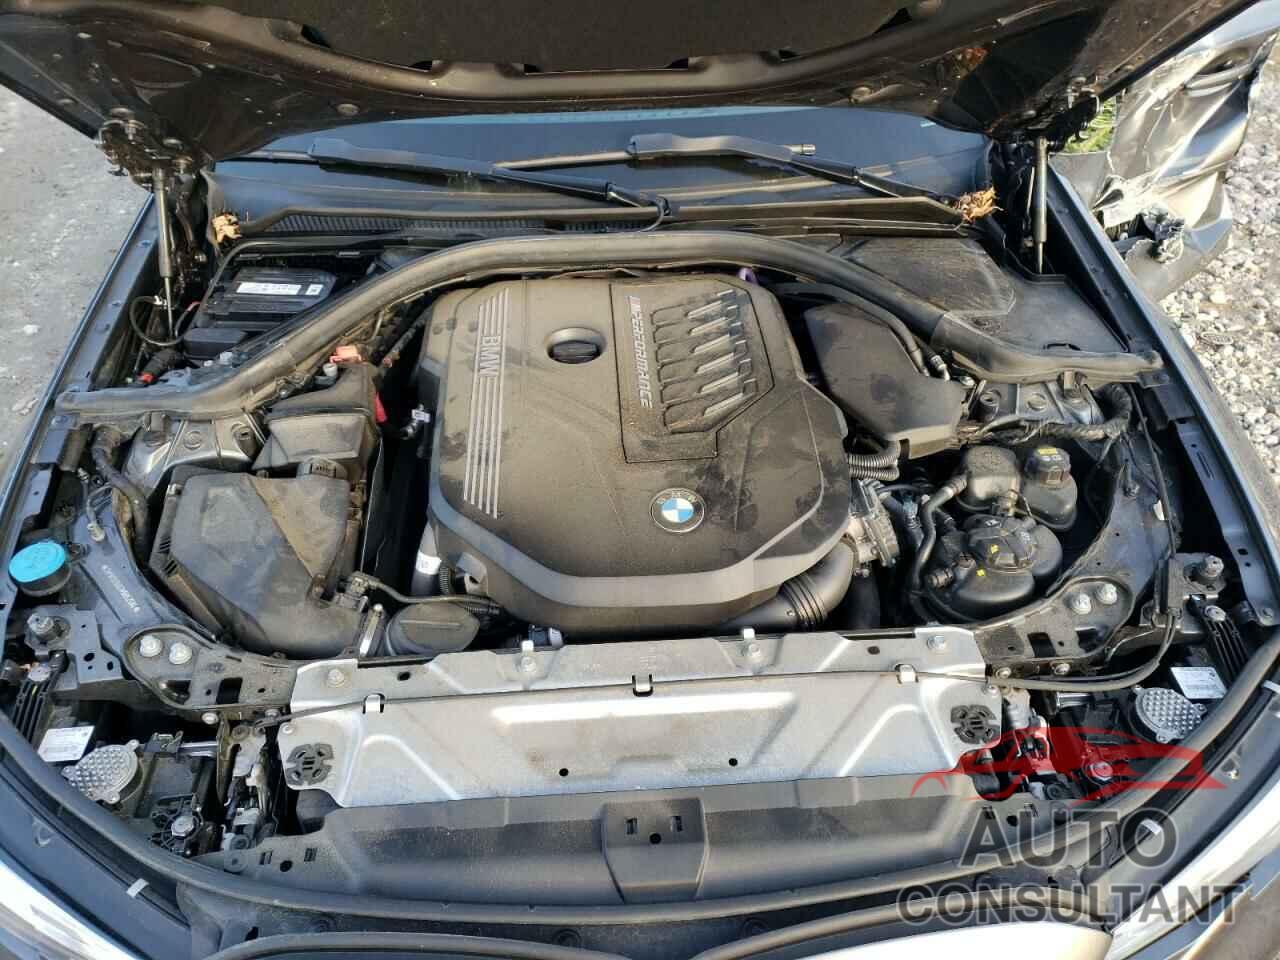 BMW M3 2021 - 3MW5U9J01M8B52584